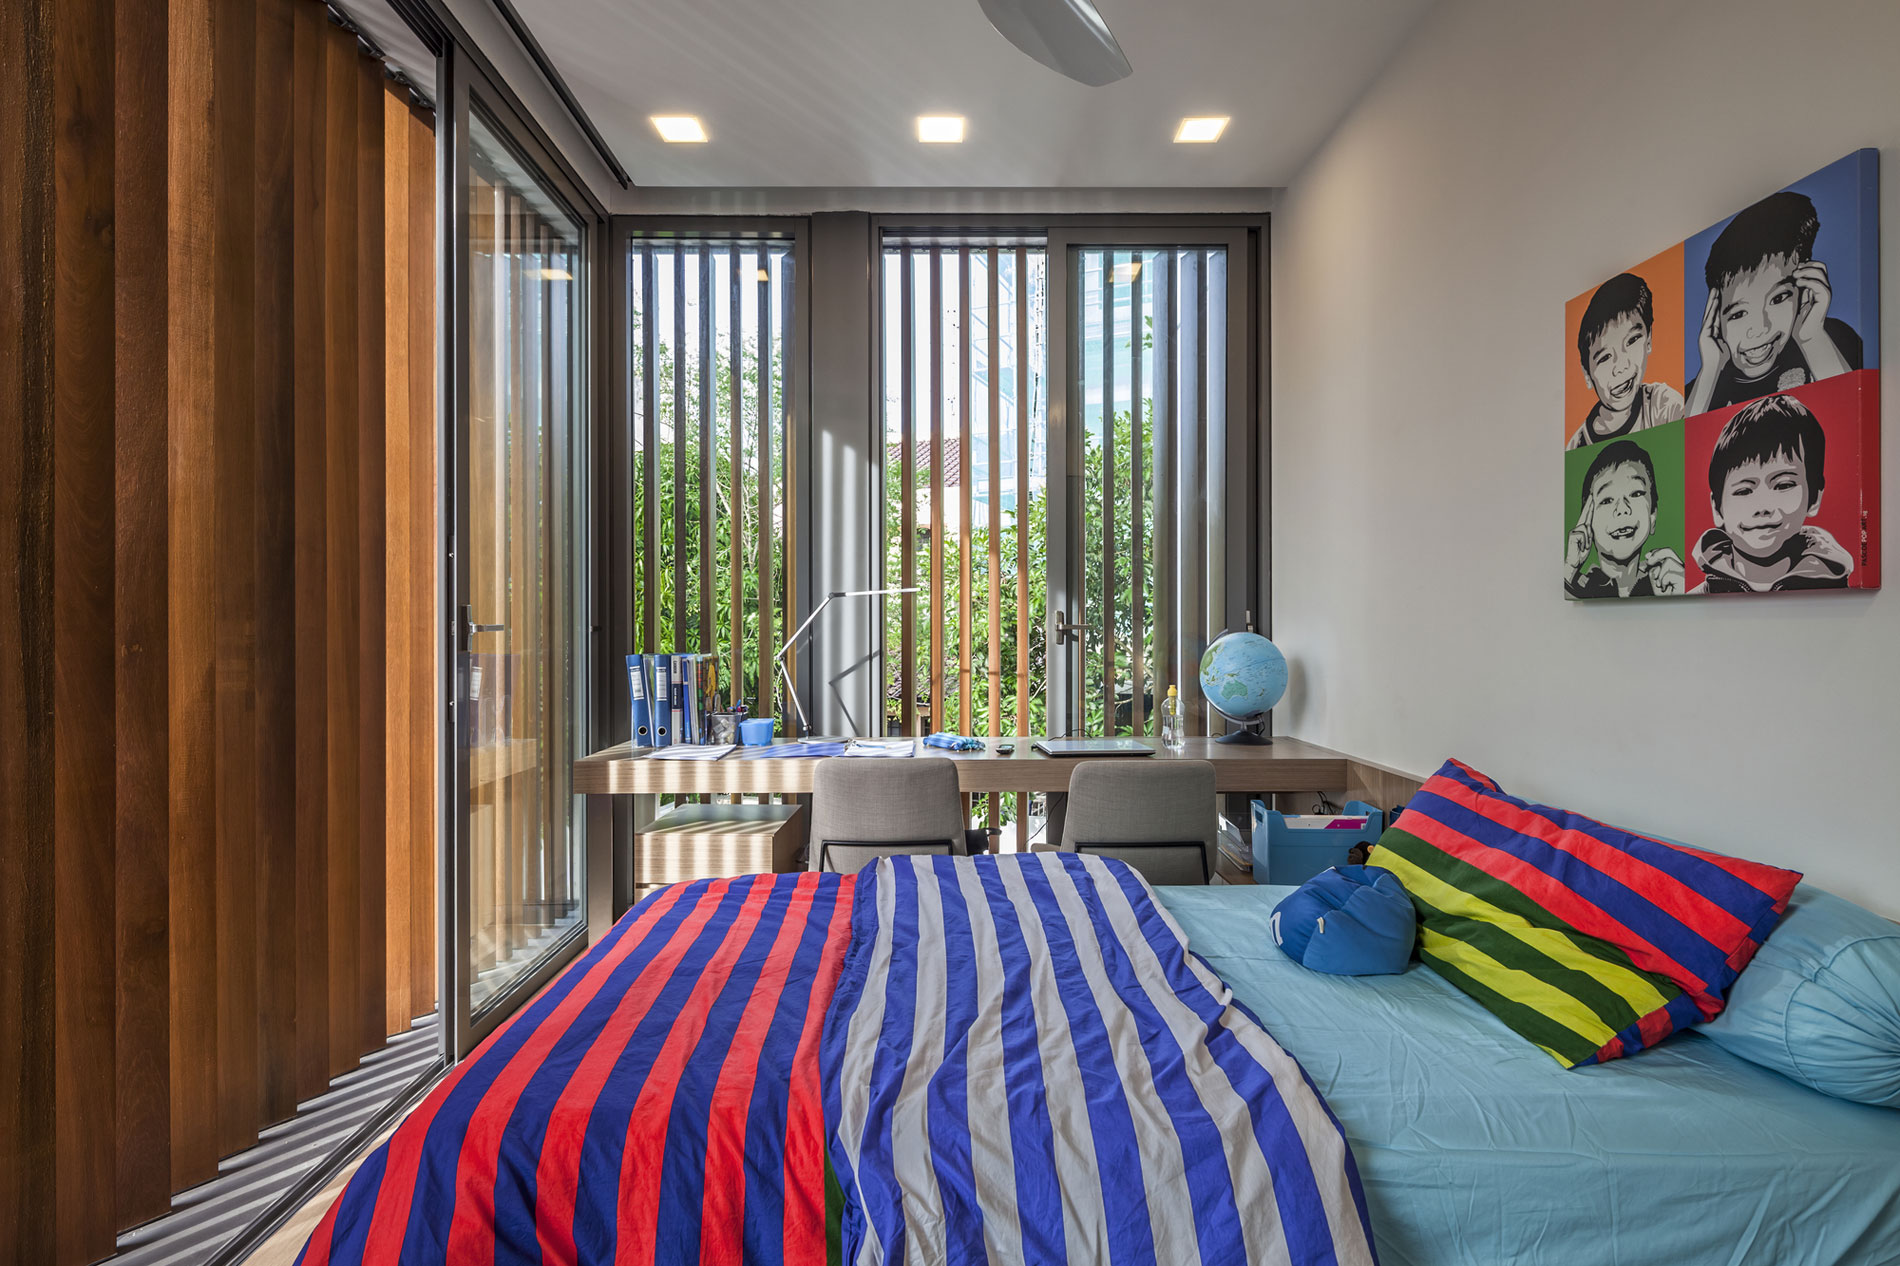 Cuverturi de pat cu dungi colorate pe un pat pentru copii